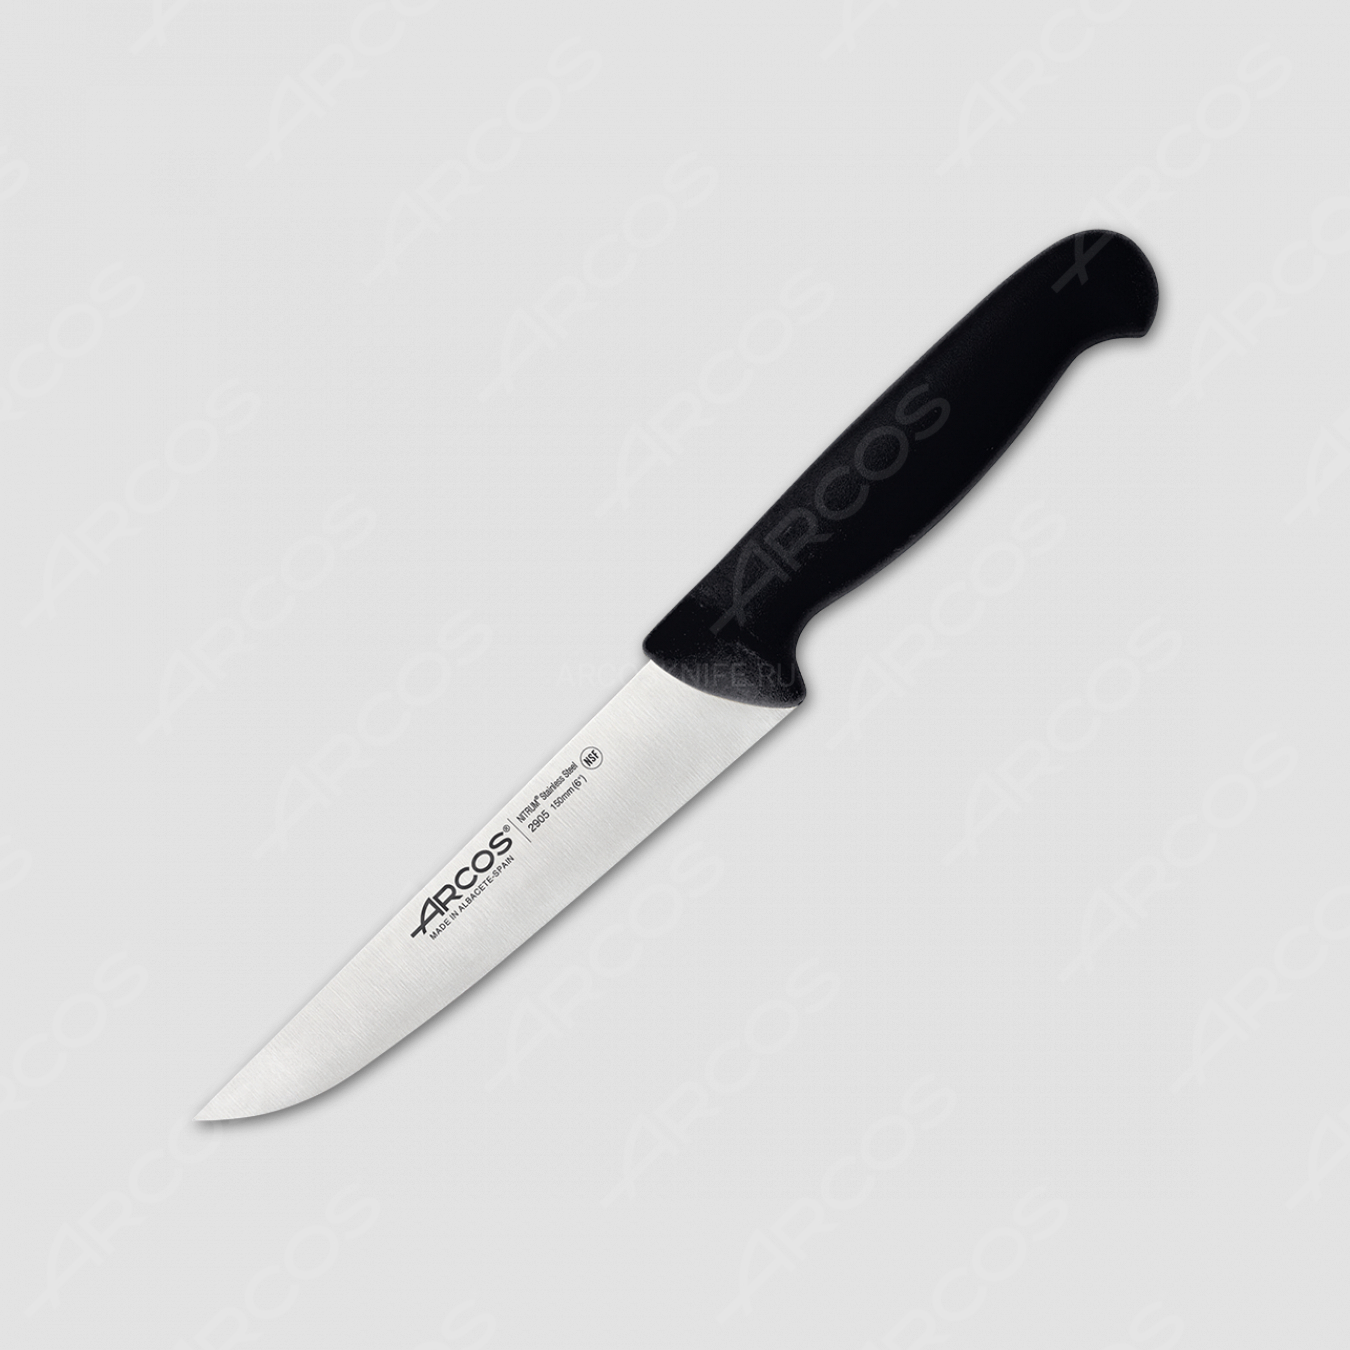 Нож кухонный 15 см, цвет рукояти черный, серия 2900, ARCOS, Испания